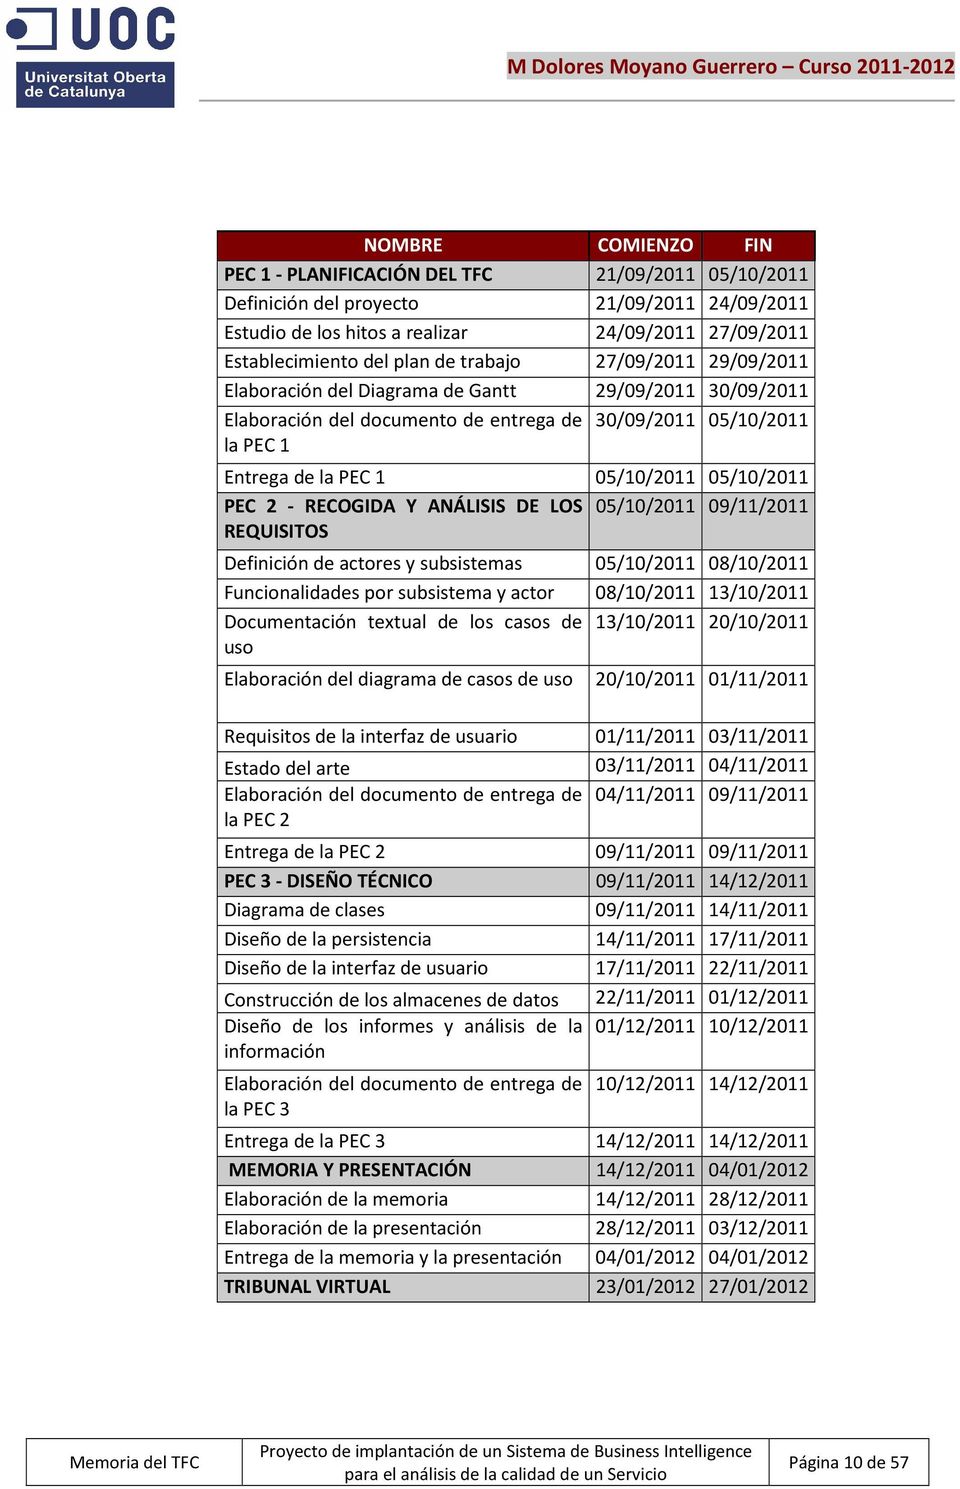 PEC 2 - RECOGIDA Y ANÁLISIS DE LOS 05/10/2011 09/11/2011 REQUISITOS Definición de actores y subsistemas 05/10/2011 08/10/2011 Funcionalidades por subsistema y actor 08/10/2011 13/10/2011